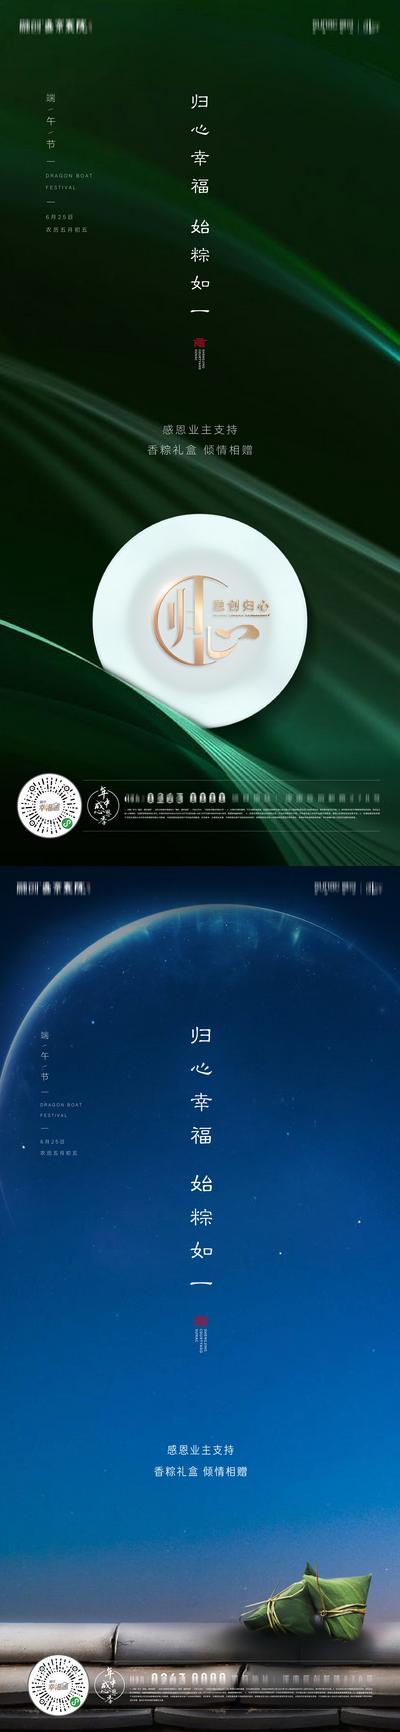 南门网 海报 房地产 端午节 中国传统节日 粽子 月亮 质感